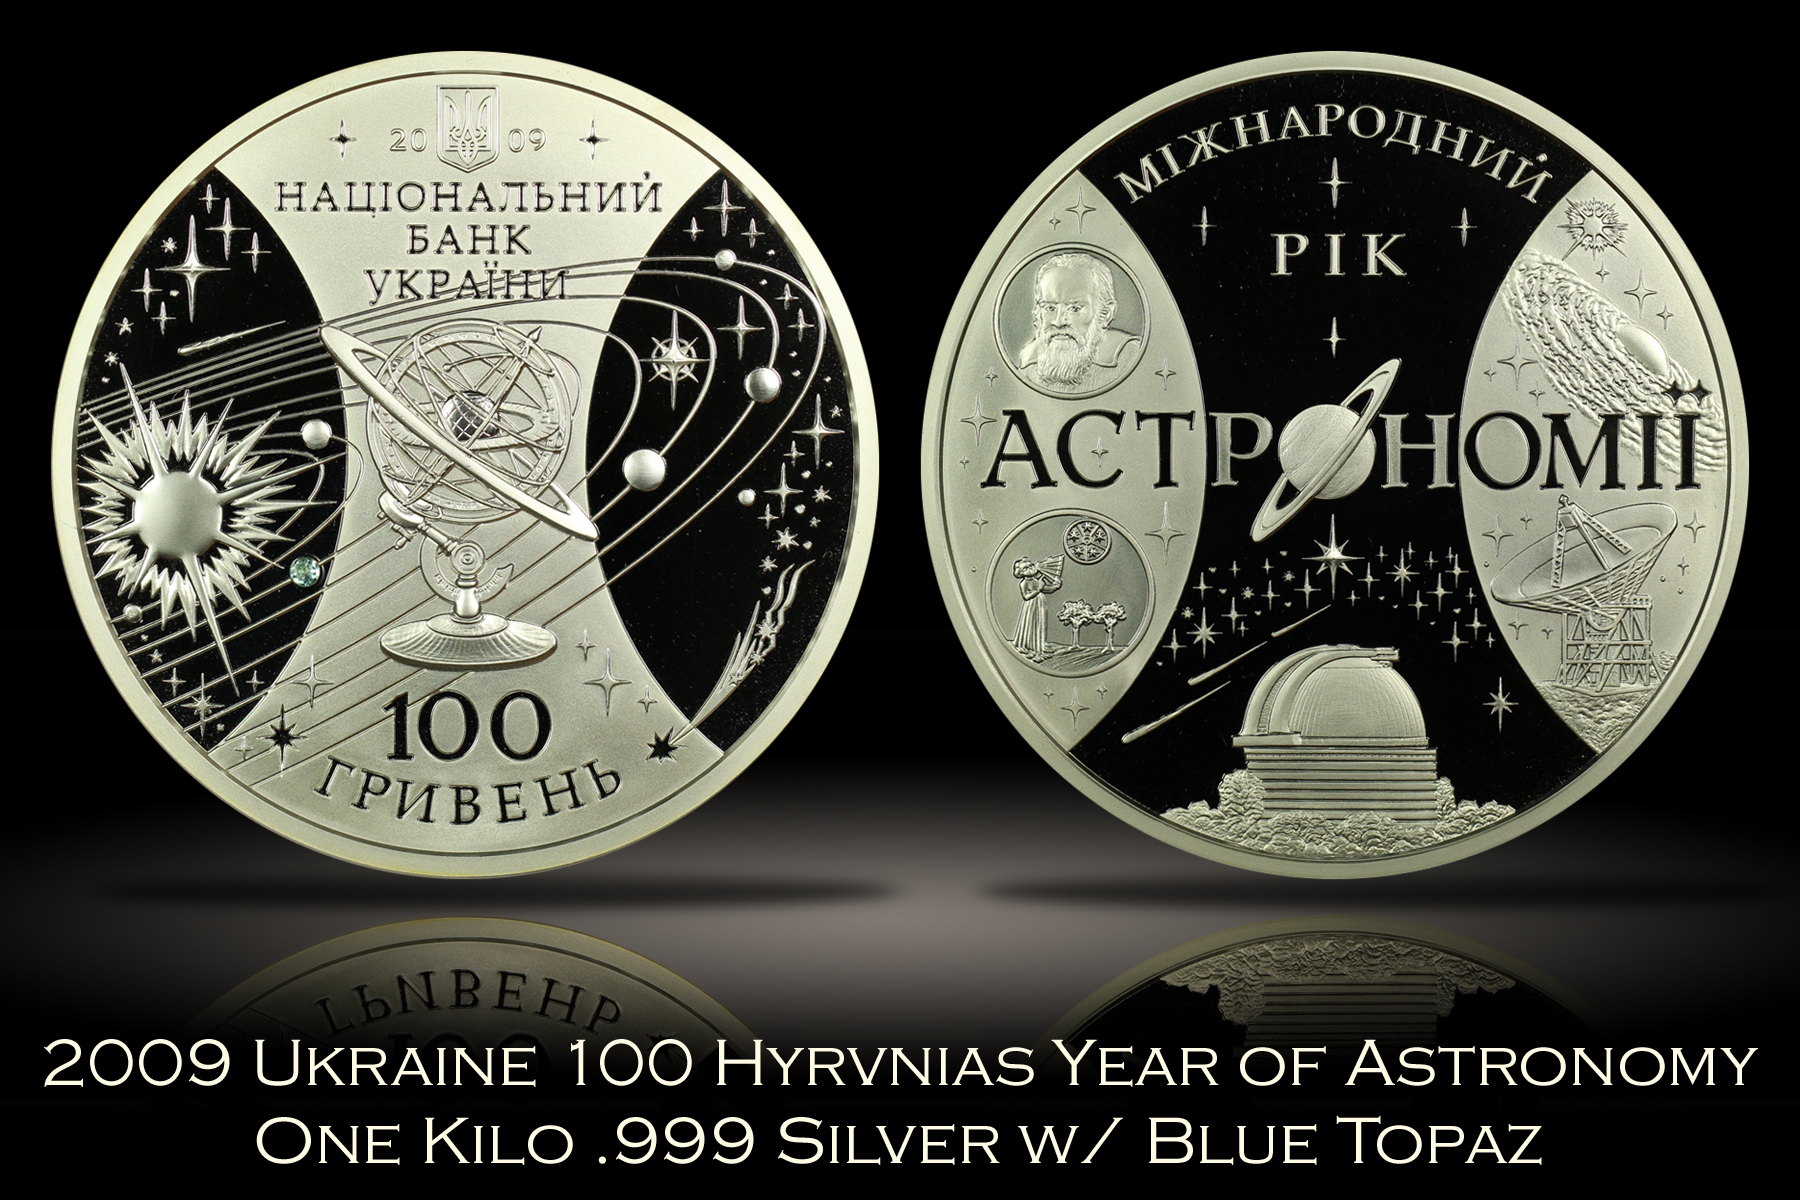 2009 Ukraine 100 Hyrvnias Year of Astronomy One Kilo Silver w/ Topaz